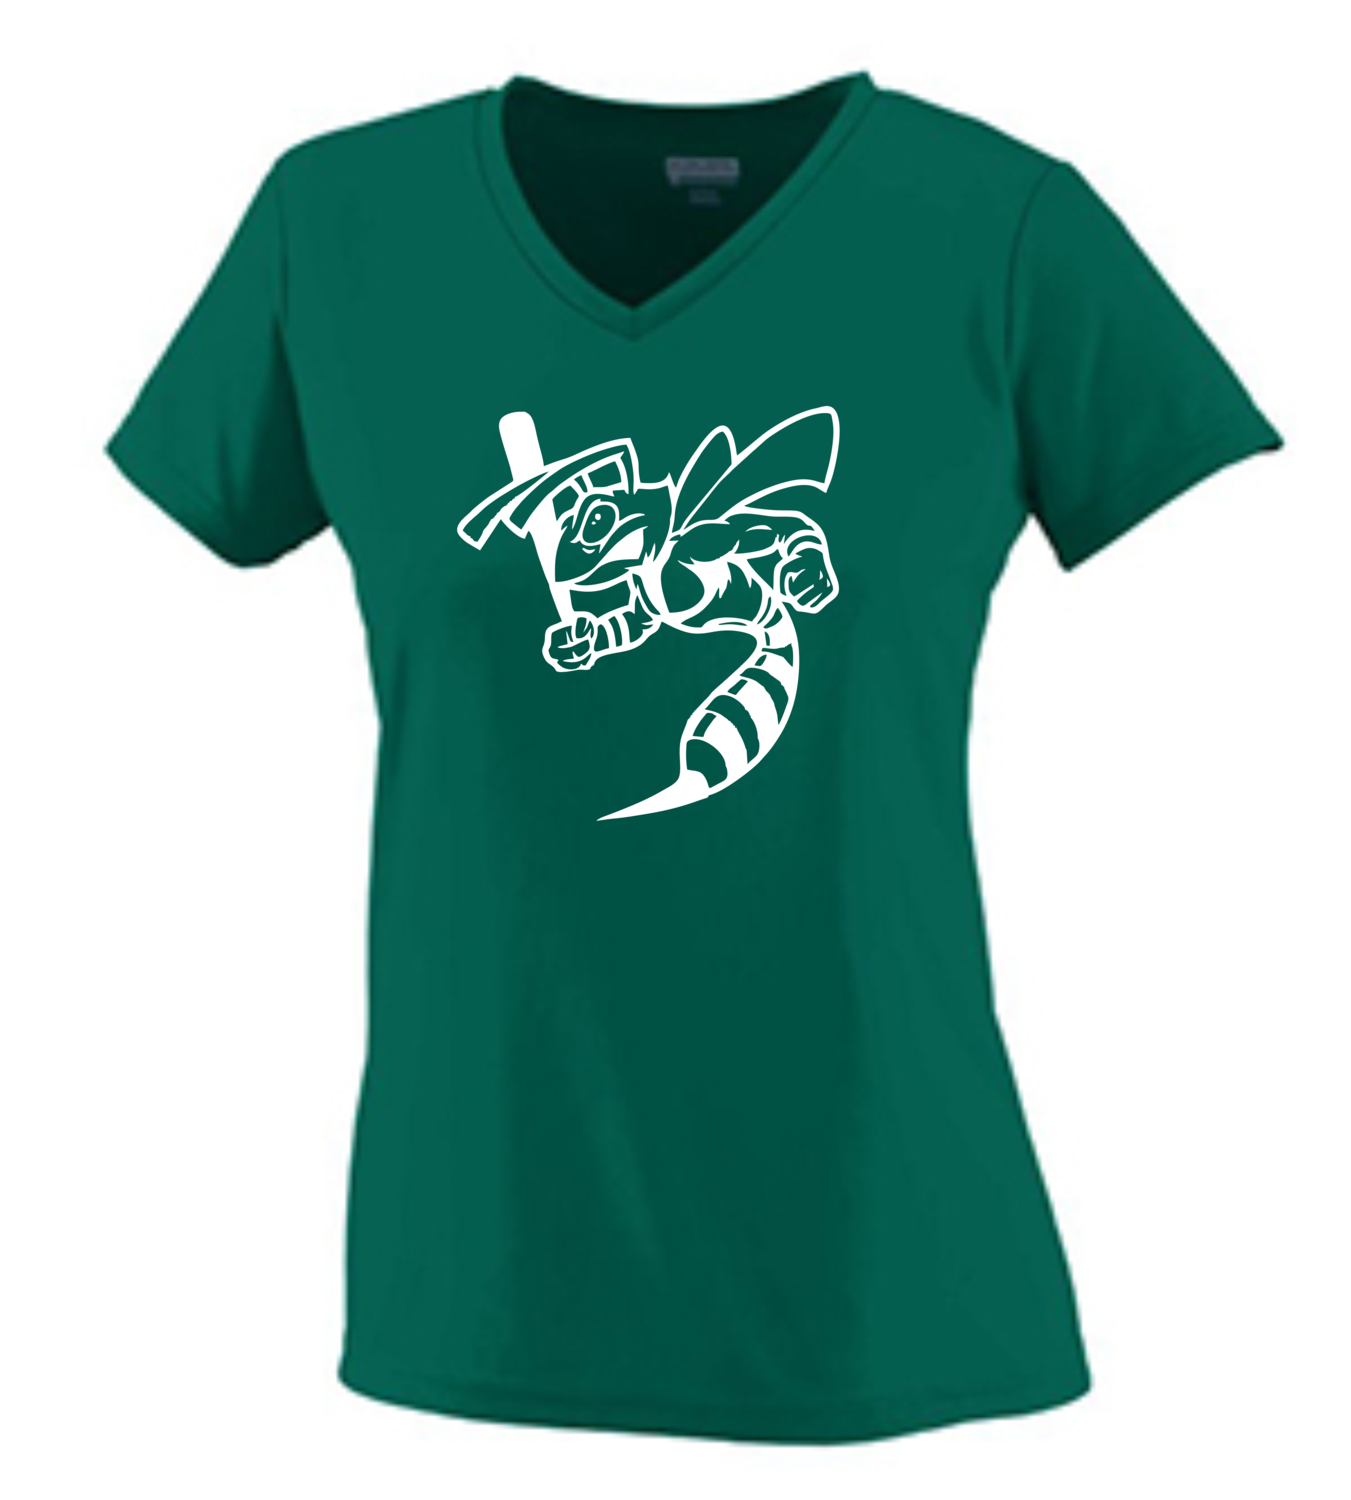 Women's Green V-Neck Short Sleeve Performance T-Shirt